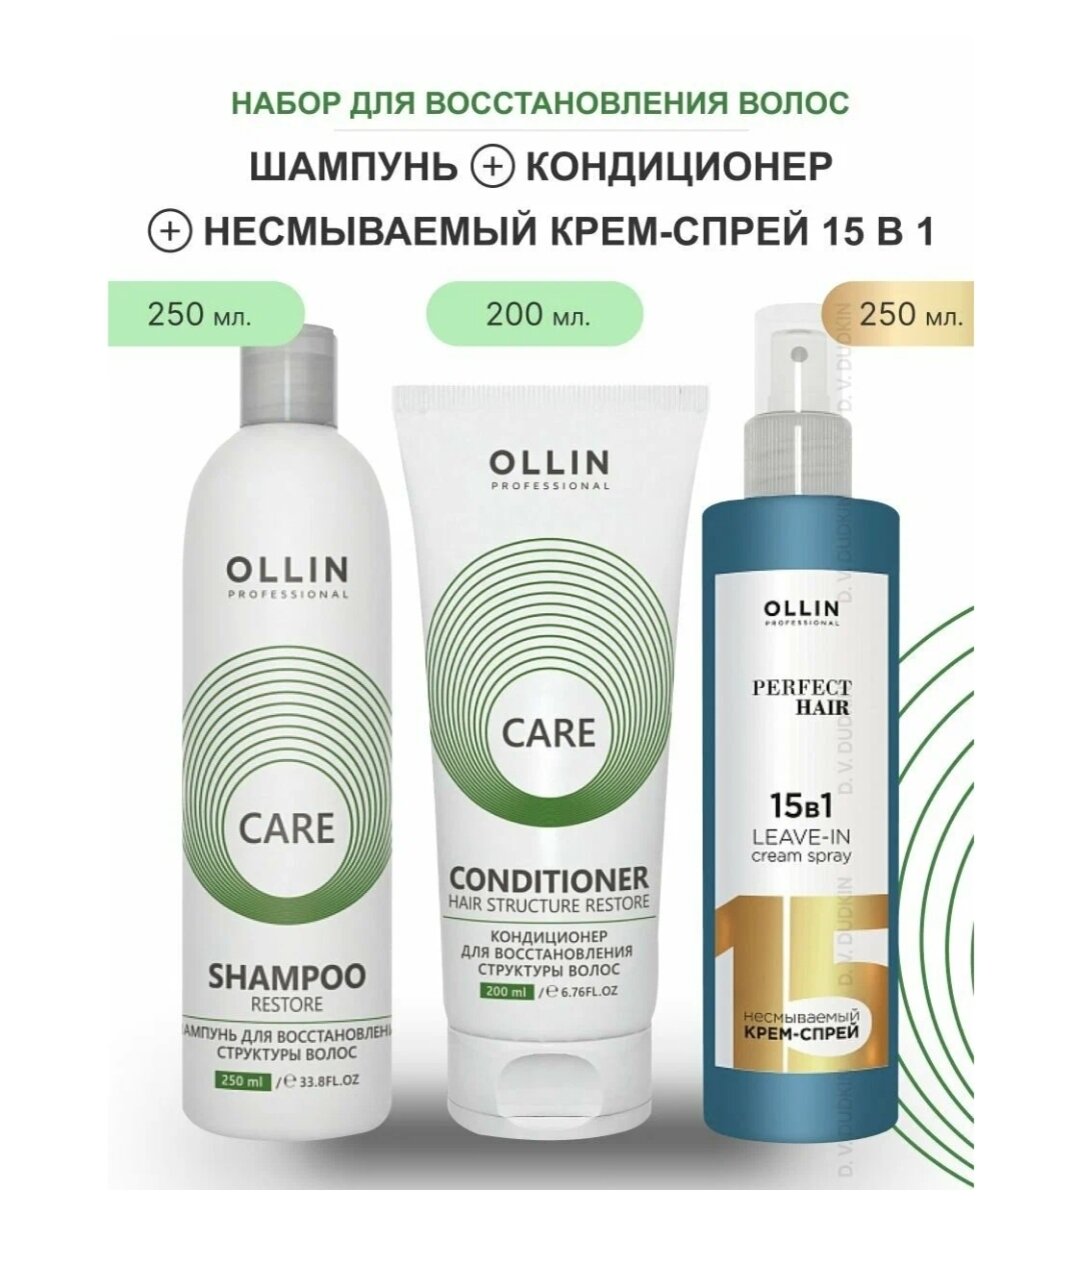 OLLIN Professional набор для восстановления структуры волос CARE RESTORE: шампунь, 250 мл + кондиционер, 200 мл + несмываемый крем-спрей, 250 мл